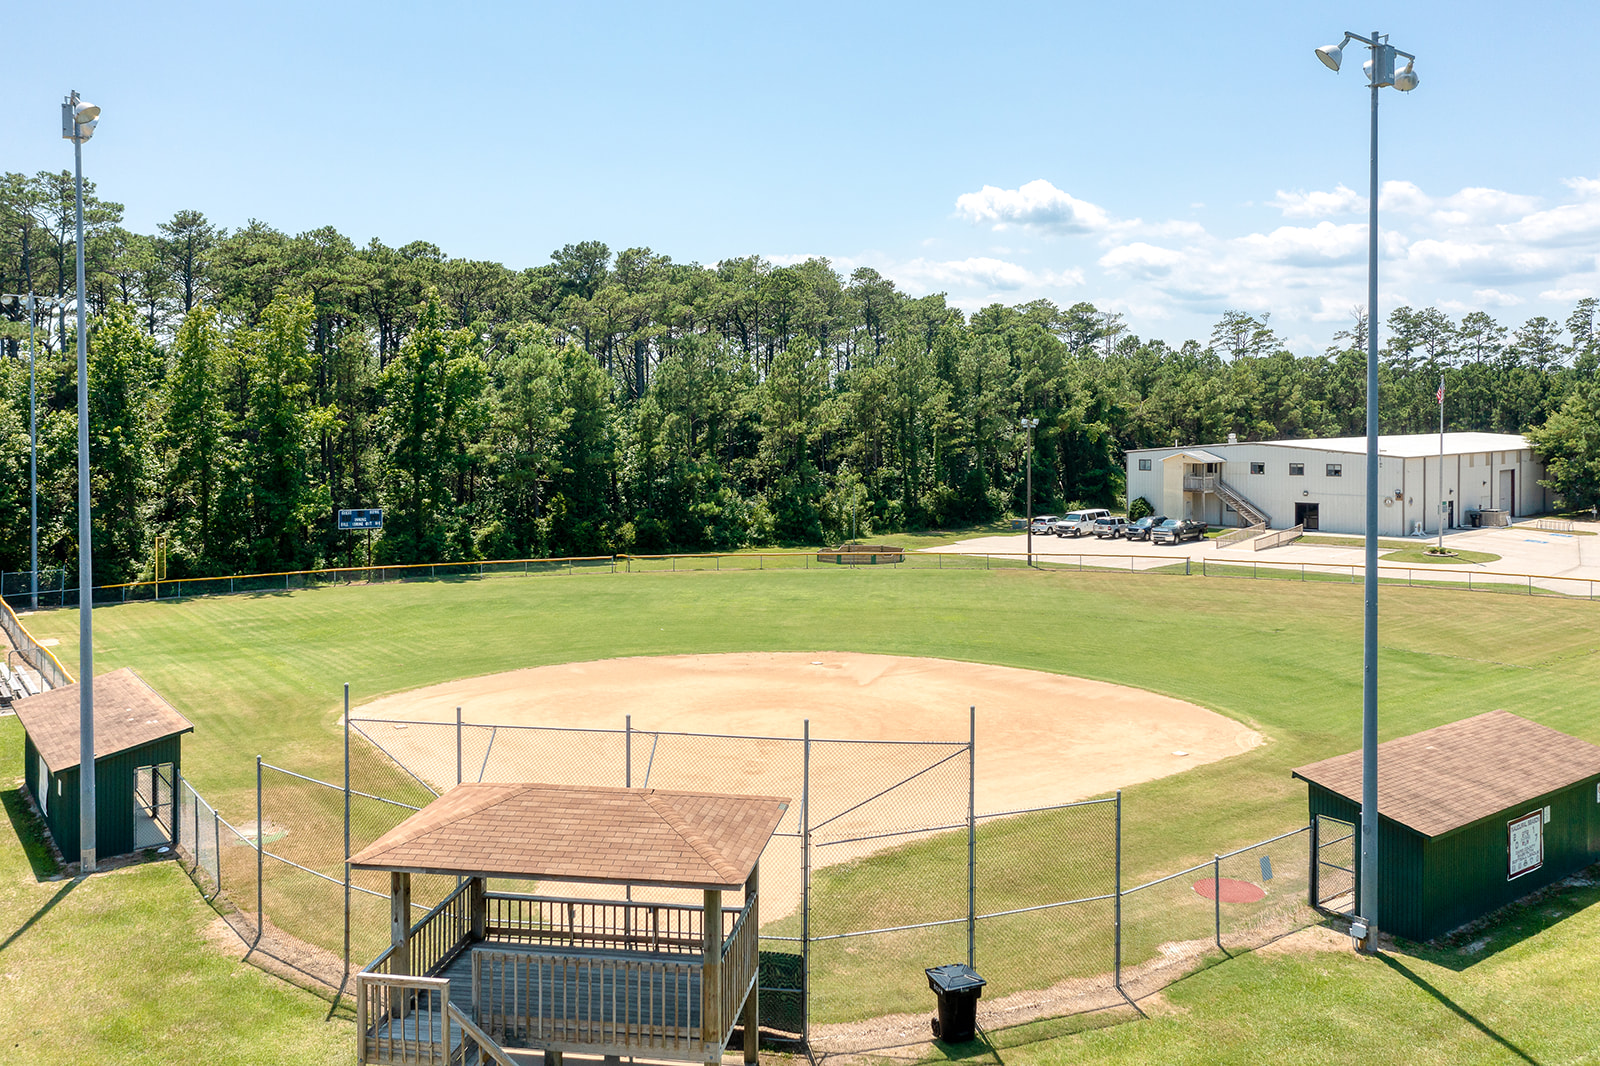 Aerial image of Wescott Park baseball fields